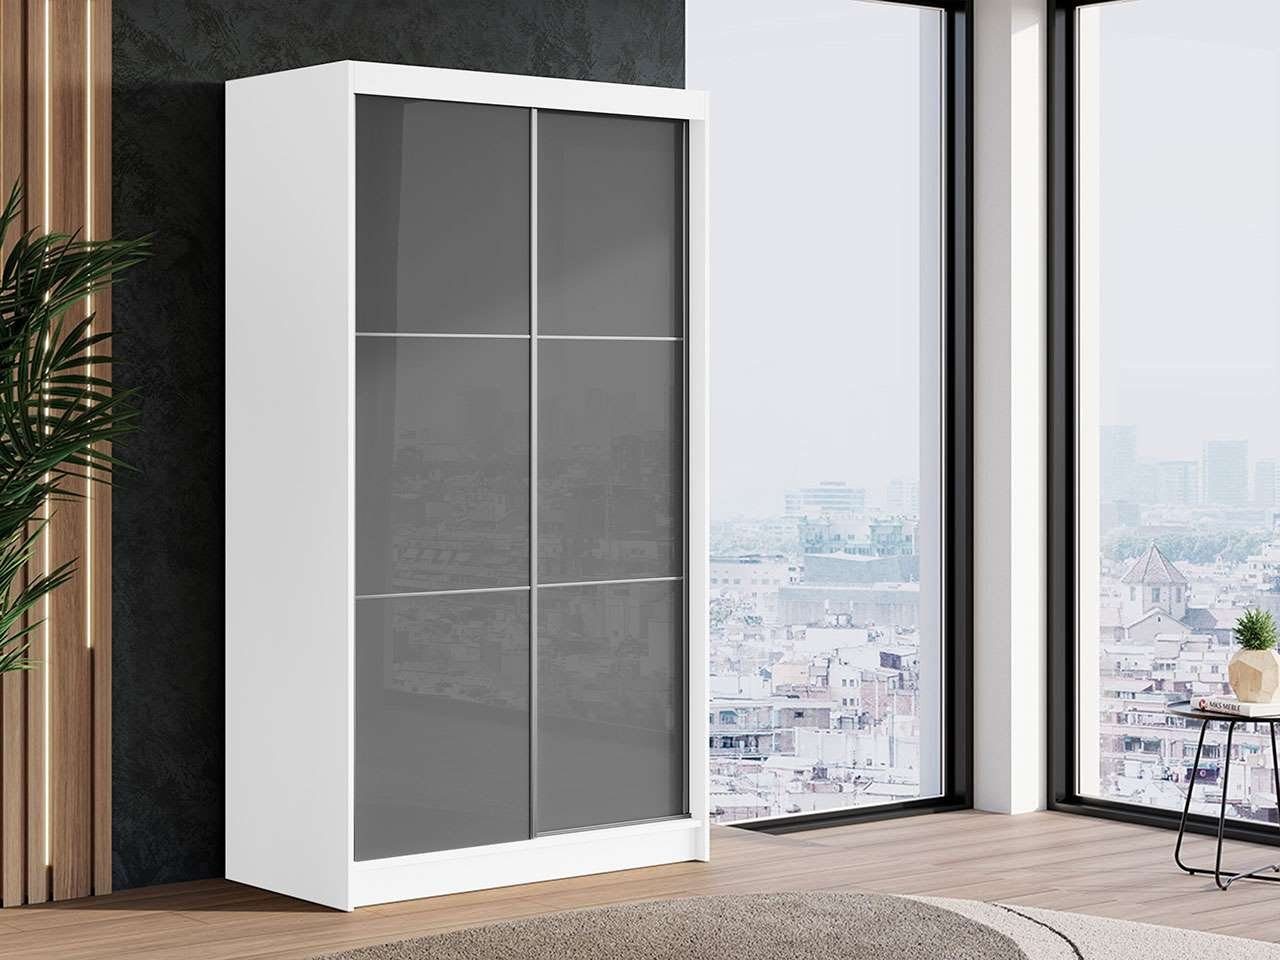 MKS MÖBEL Kleiderschrank VALENCIA Weißer Schiebeschrank 120 cm, mit Lacobel-Glas an der Tür Grau